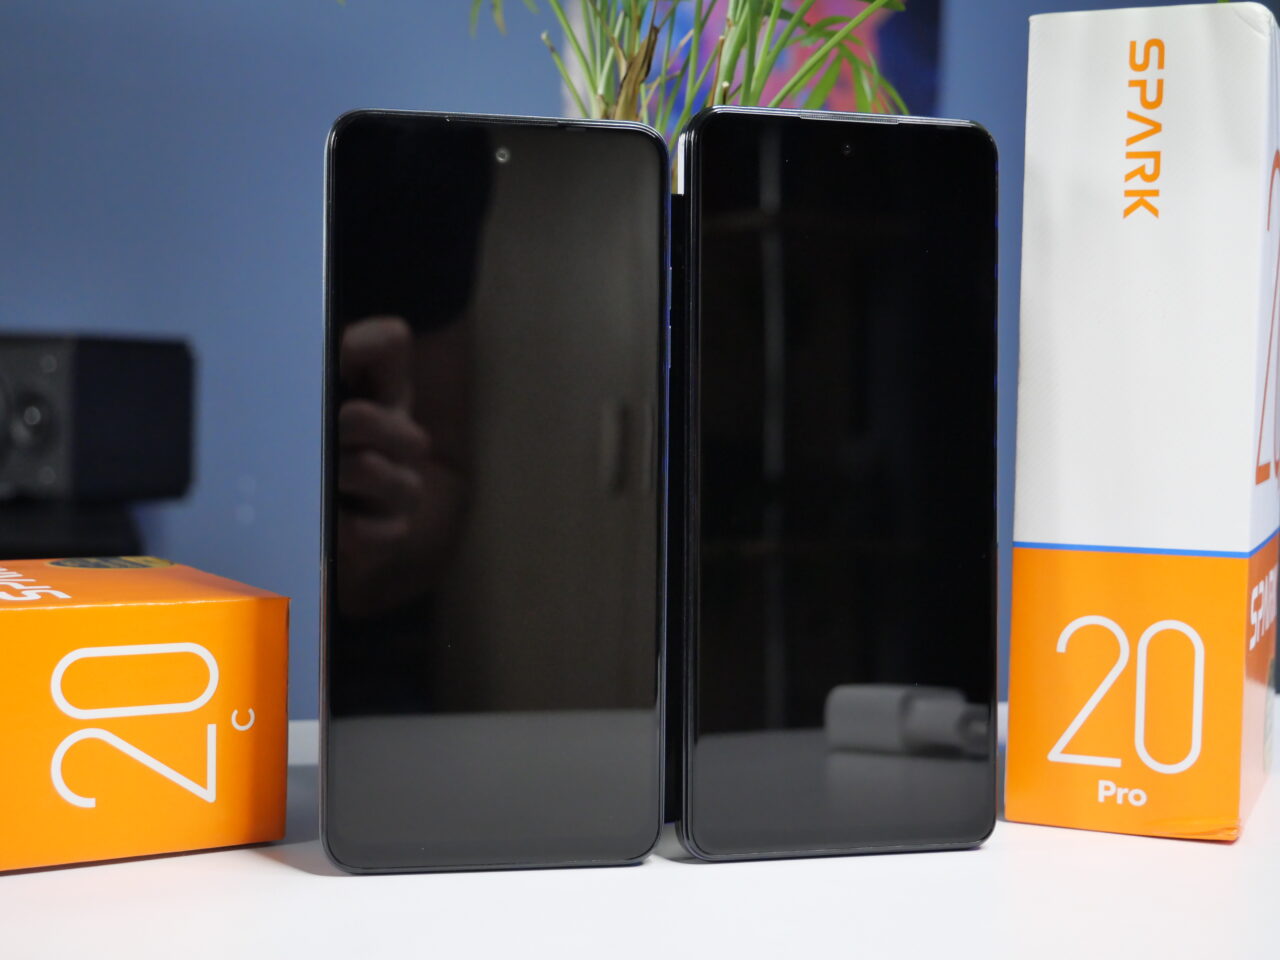 Dwa smartfony stoją pionowo obok siebie z opakowaniami Spark 20 i Spark 20 Pro, na tle niebieskiej ściany z małą rośliną.